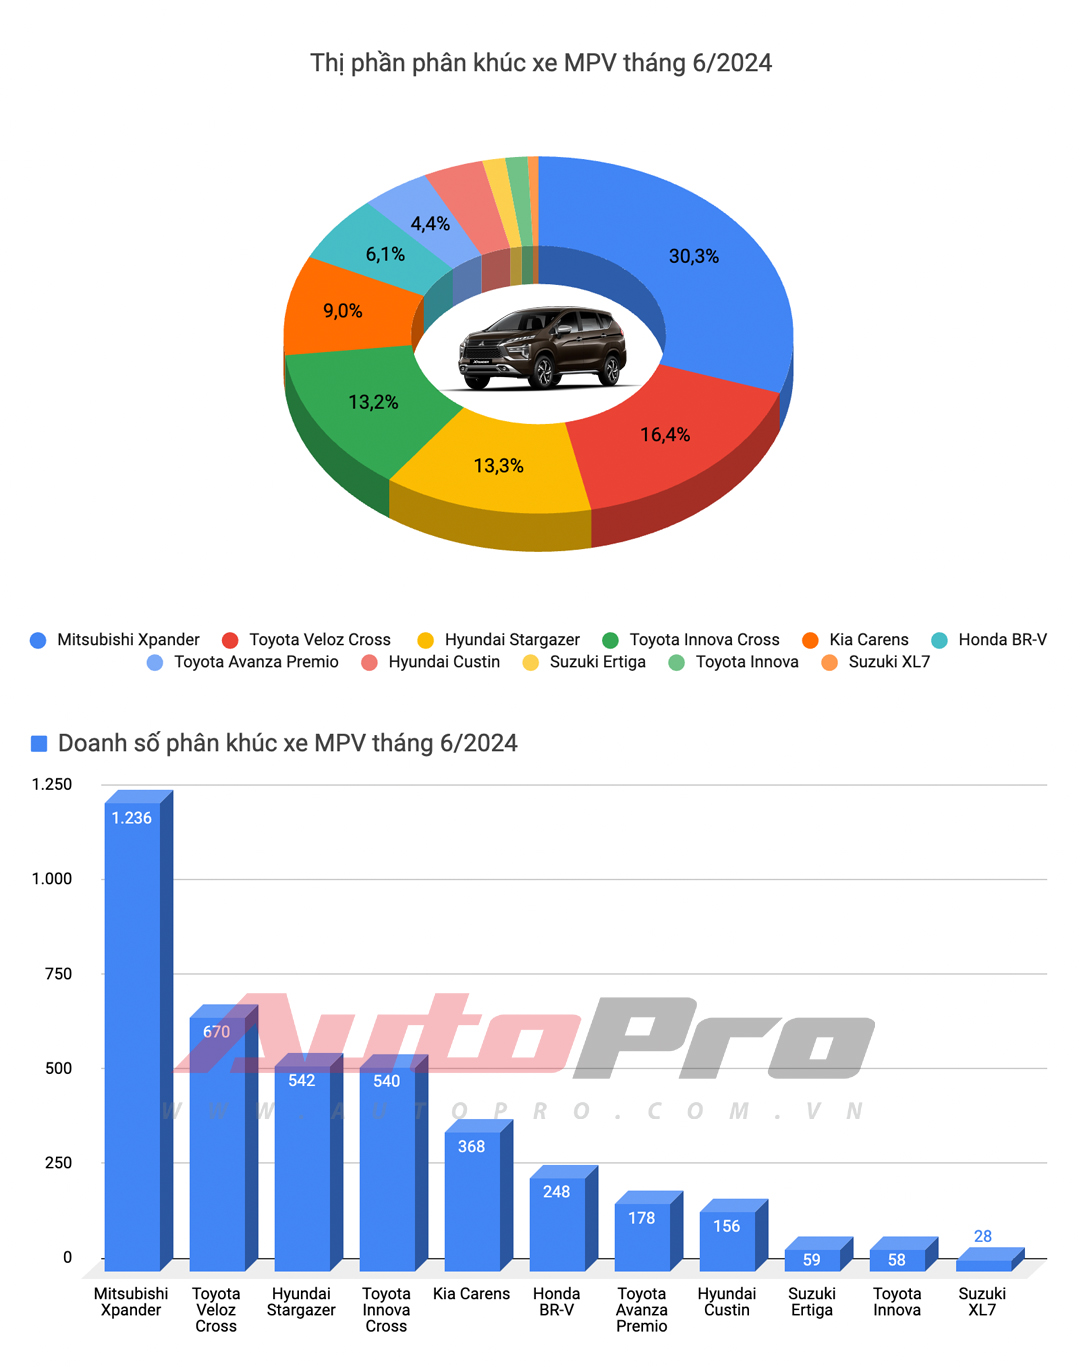 Mazda CX-5 bứt tốc, Xpander lần đầu đứng thứ 3 và những điều đáng chú ý của top 10 xe bán chạy tháng 6/2024- Ảnh 6.